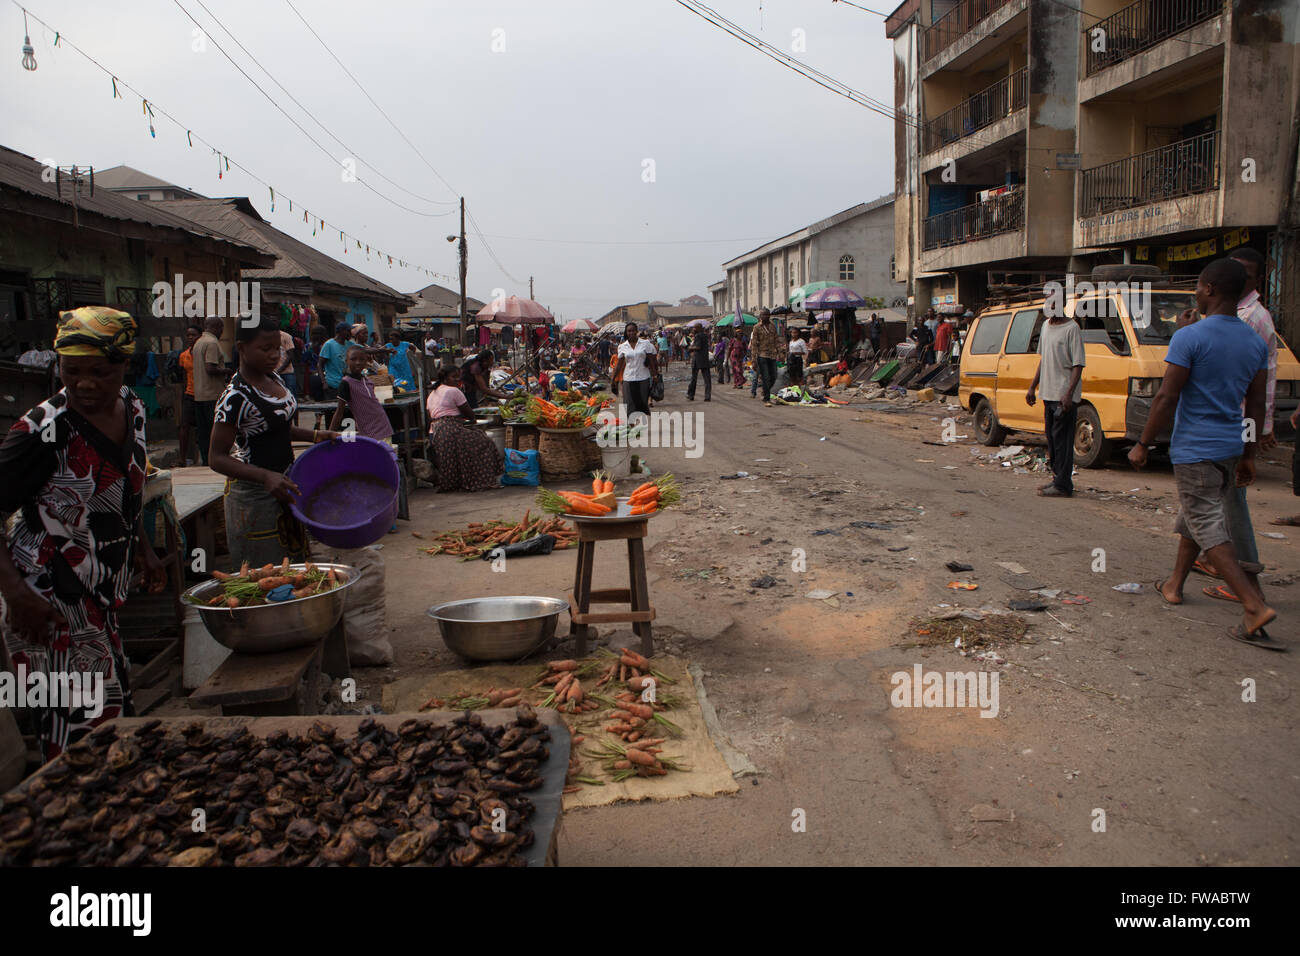 Une scène de marché de rue au Nigeria, l'Afrique Banque D'Images